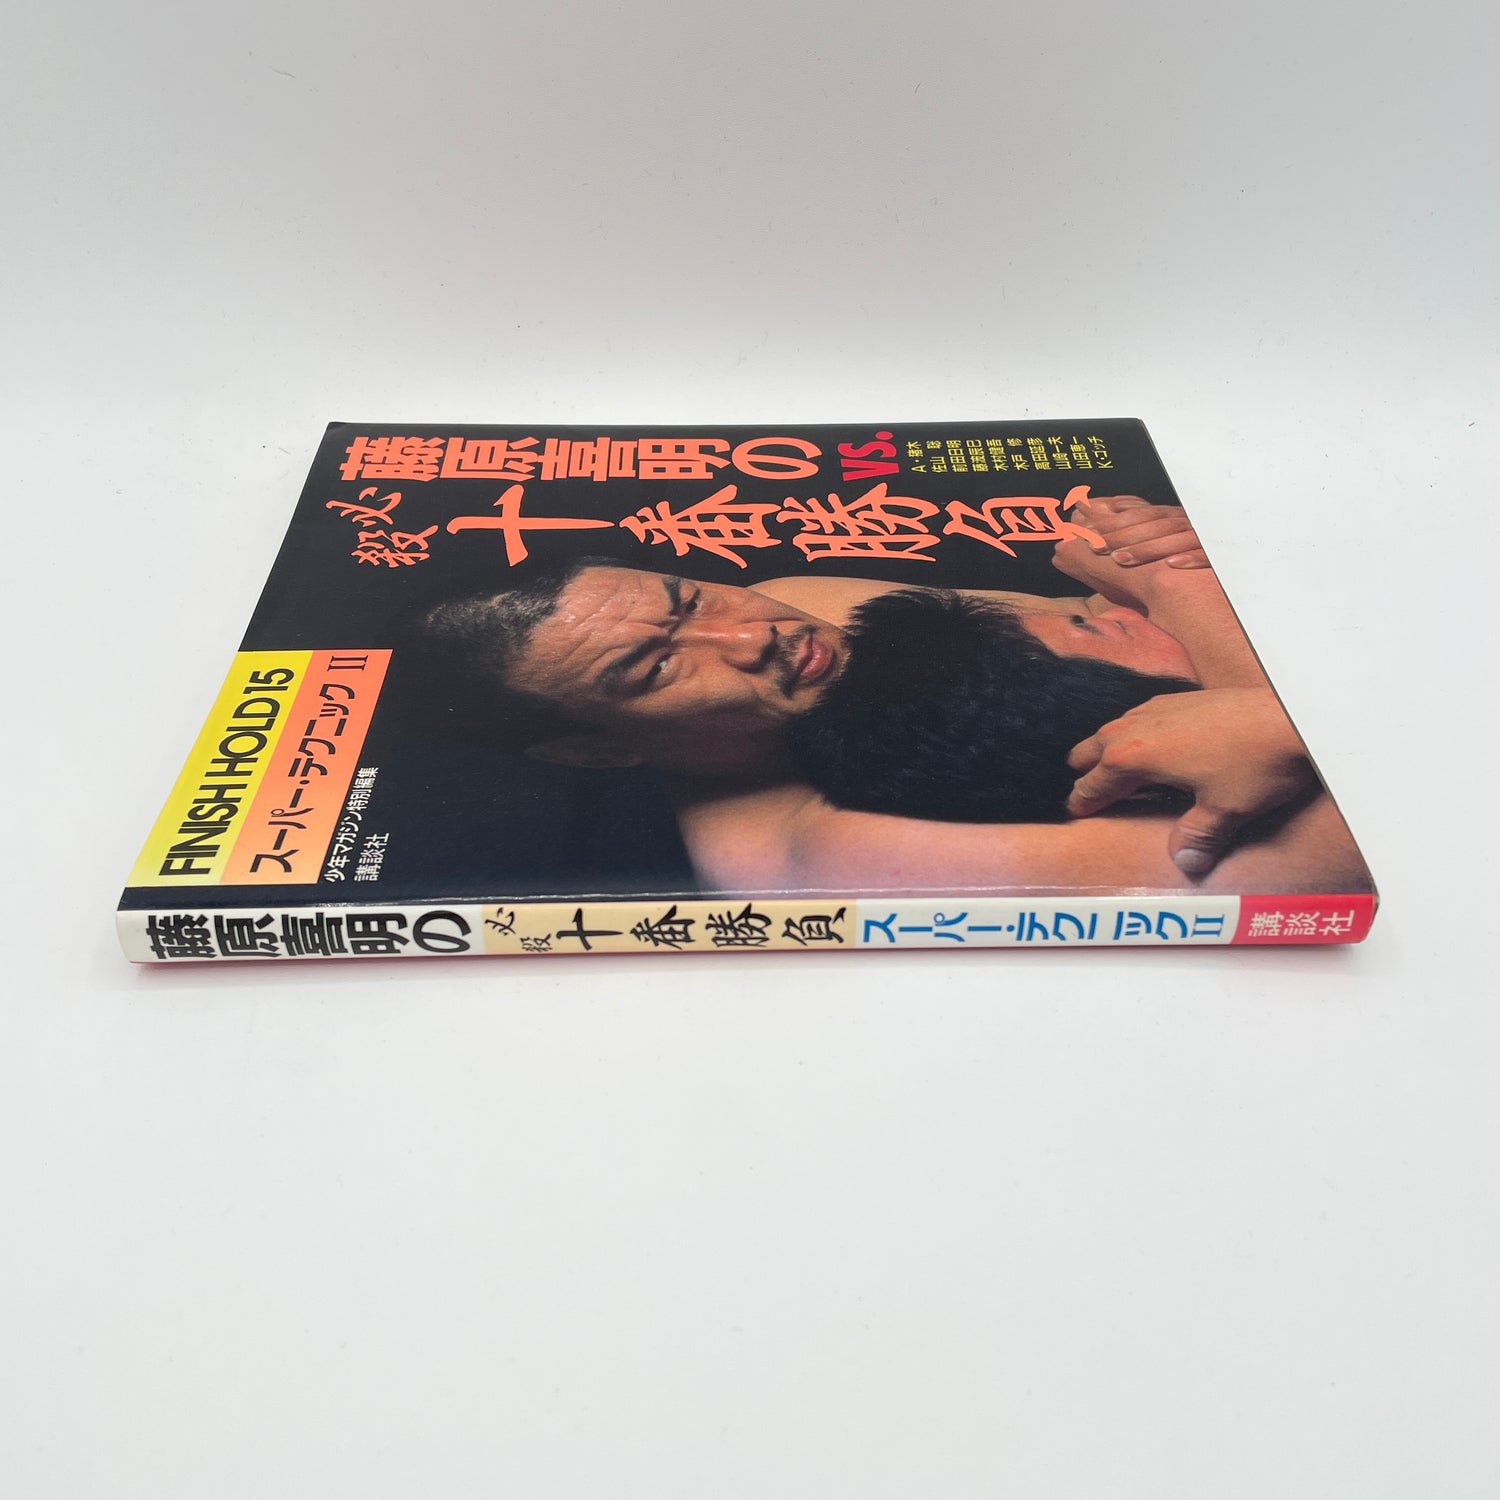 Libro de súper técnicas 2 de Yoshiaki Fujiwara (usado)